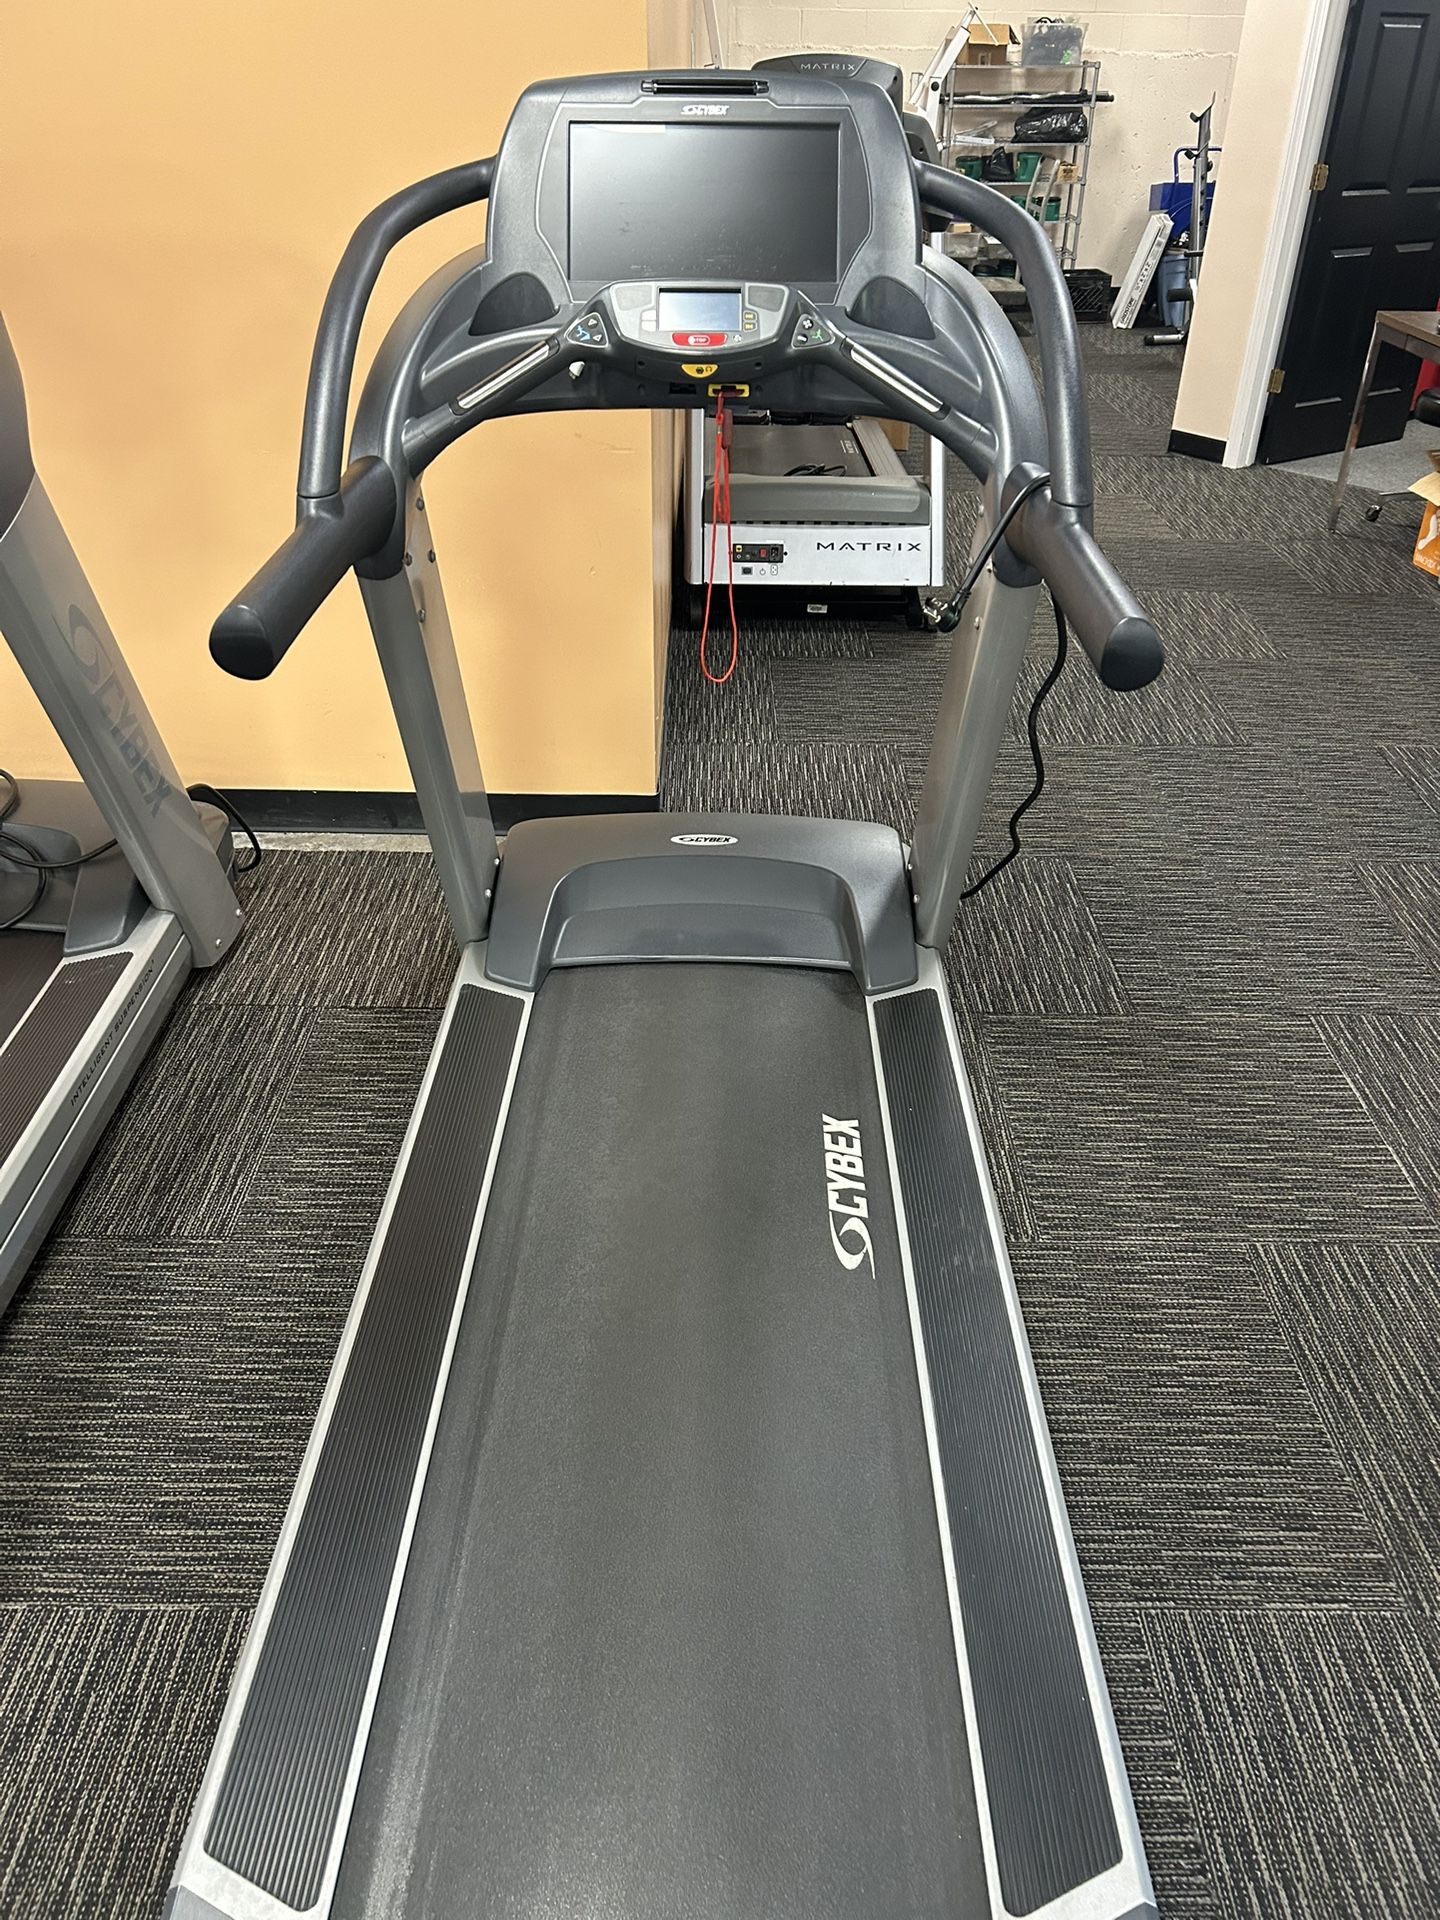 Cybex 770t Treadmill 